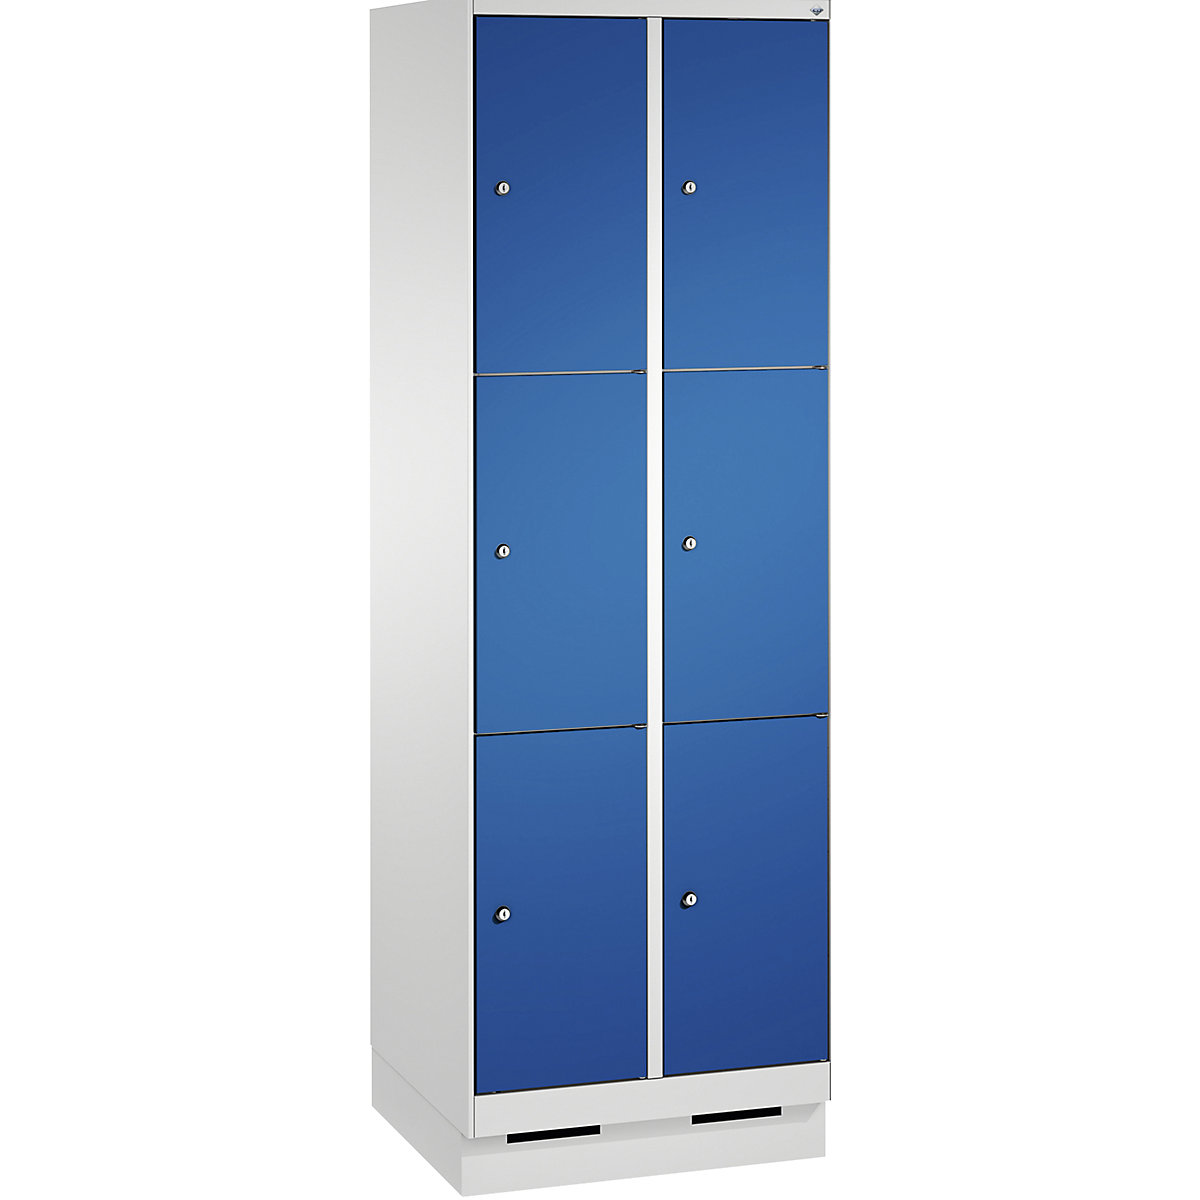 Armoire à casiers sur socle EVOLO – C+P, 2 compartiments, 3 casiers chacun, largeur compartiments 300 mm, gris clair / bleu gentiane-5